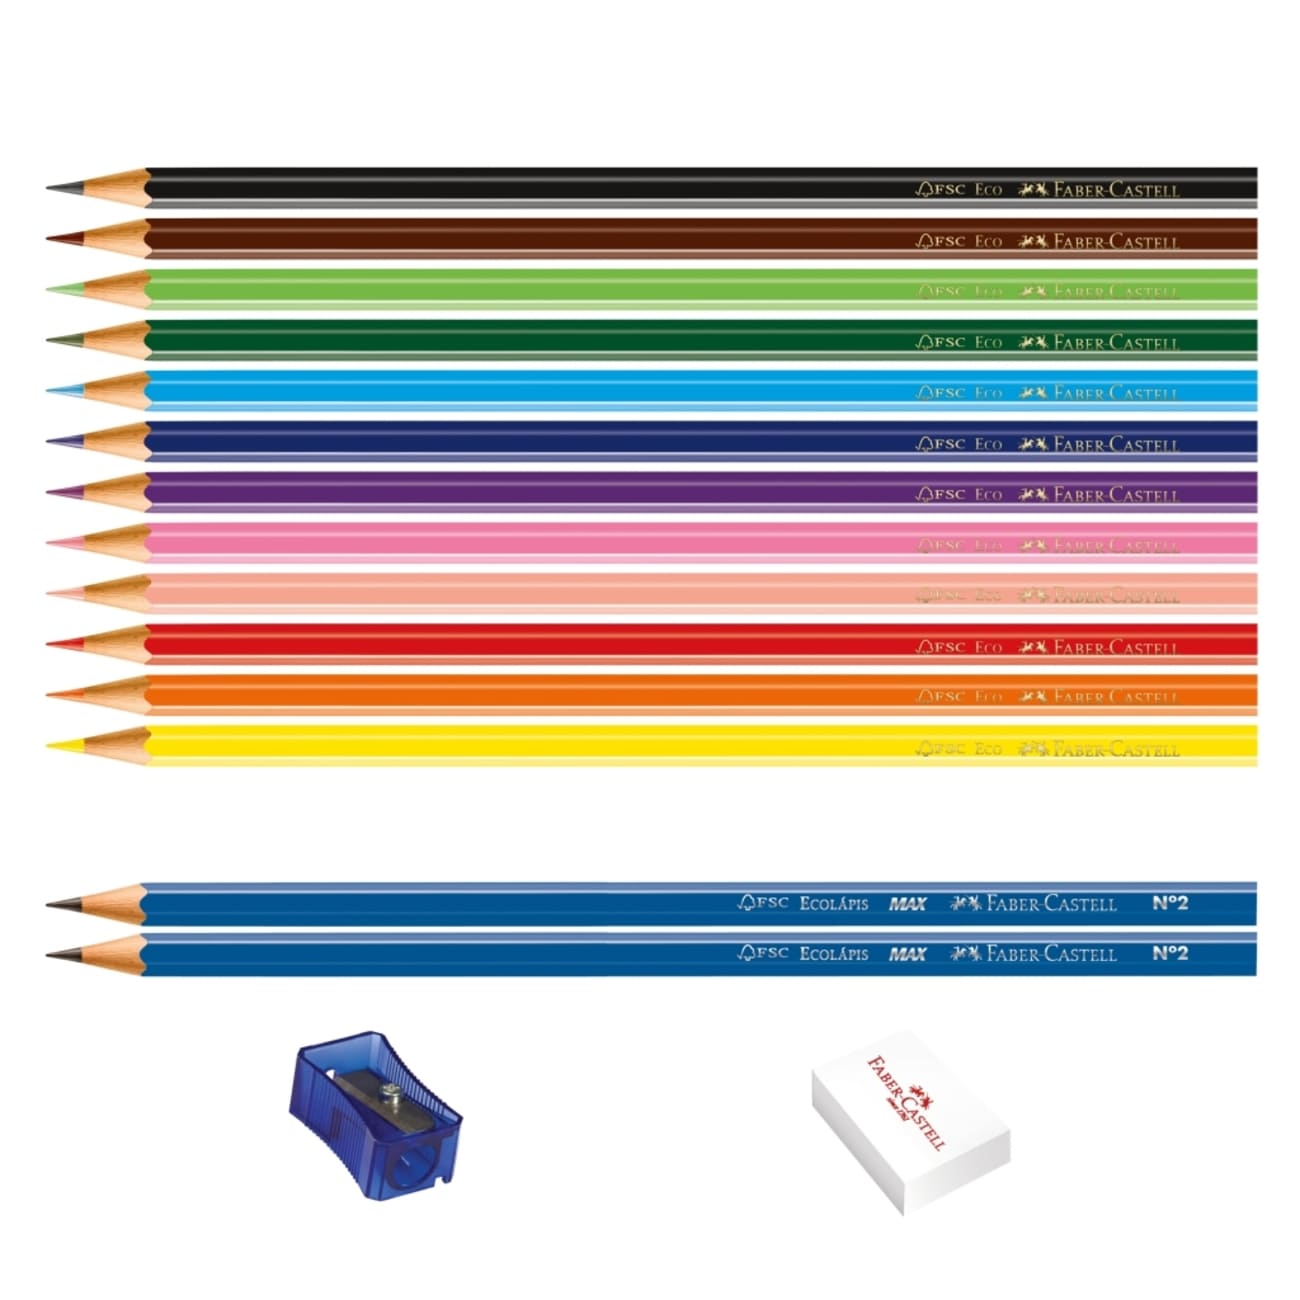 Ecolpis de Cor Faber-Castell Kit Escolar 12 Cores + 2 Ecolpis Grafite + 1 Apontador + 1 Borracha